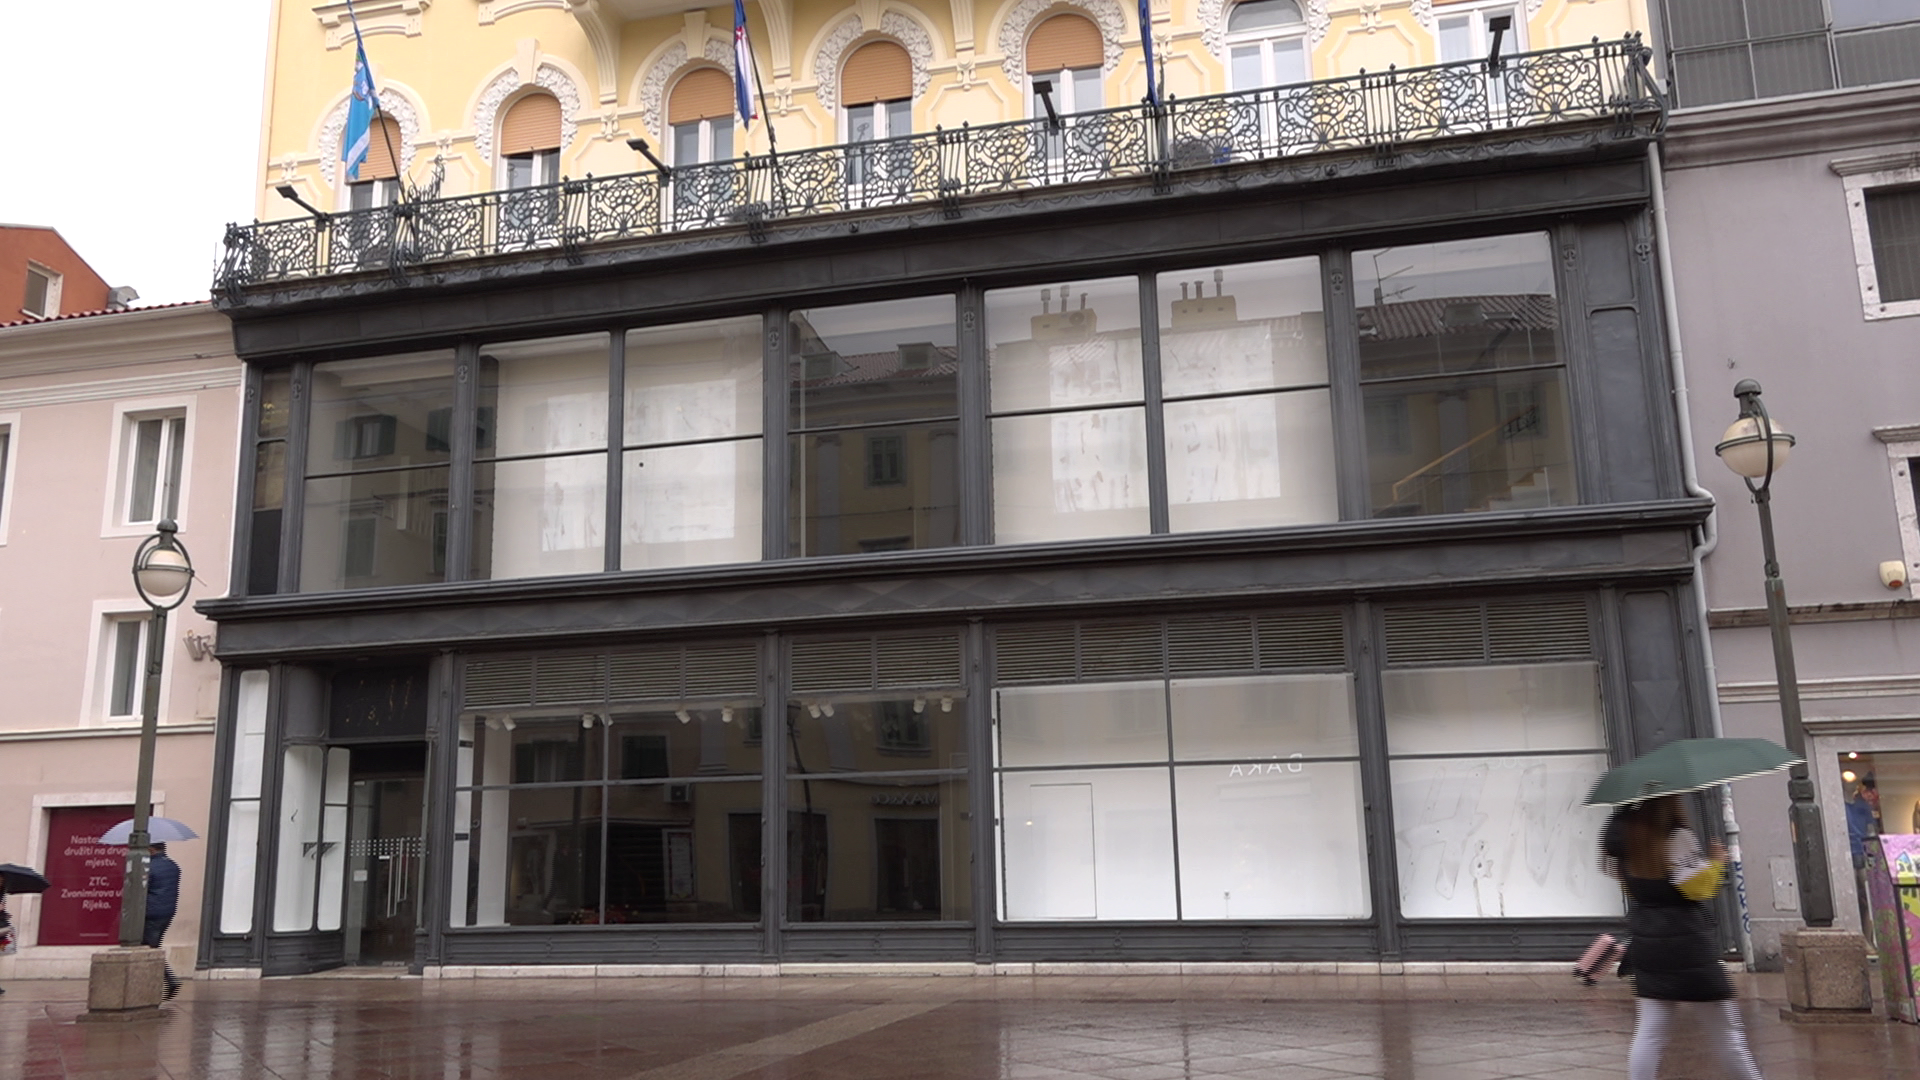 Veliki gradski prostor, u kojem je bio H&M, stoji prazan. Pokrenuta inicijativa da se stavi u kulturne svrhe!